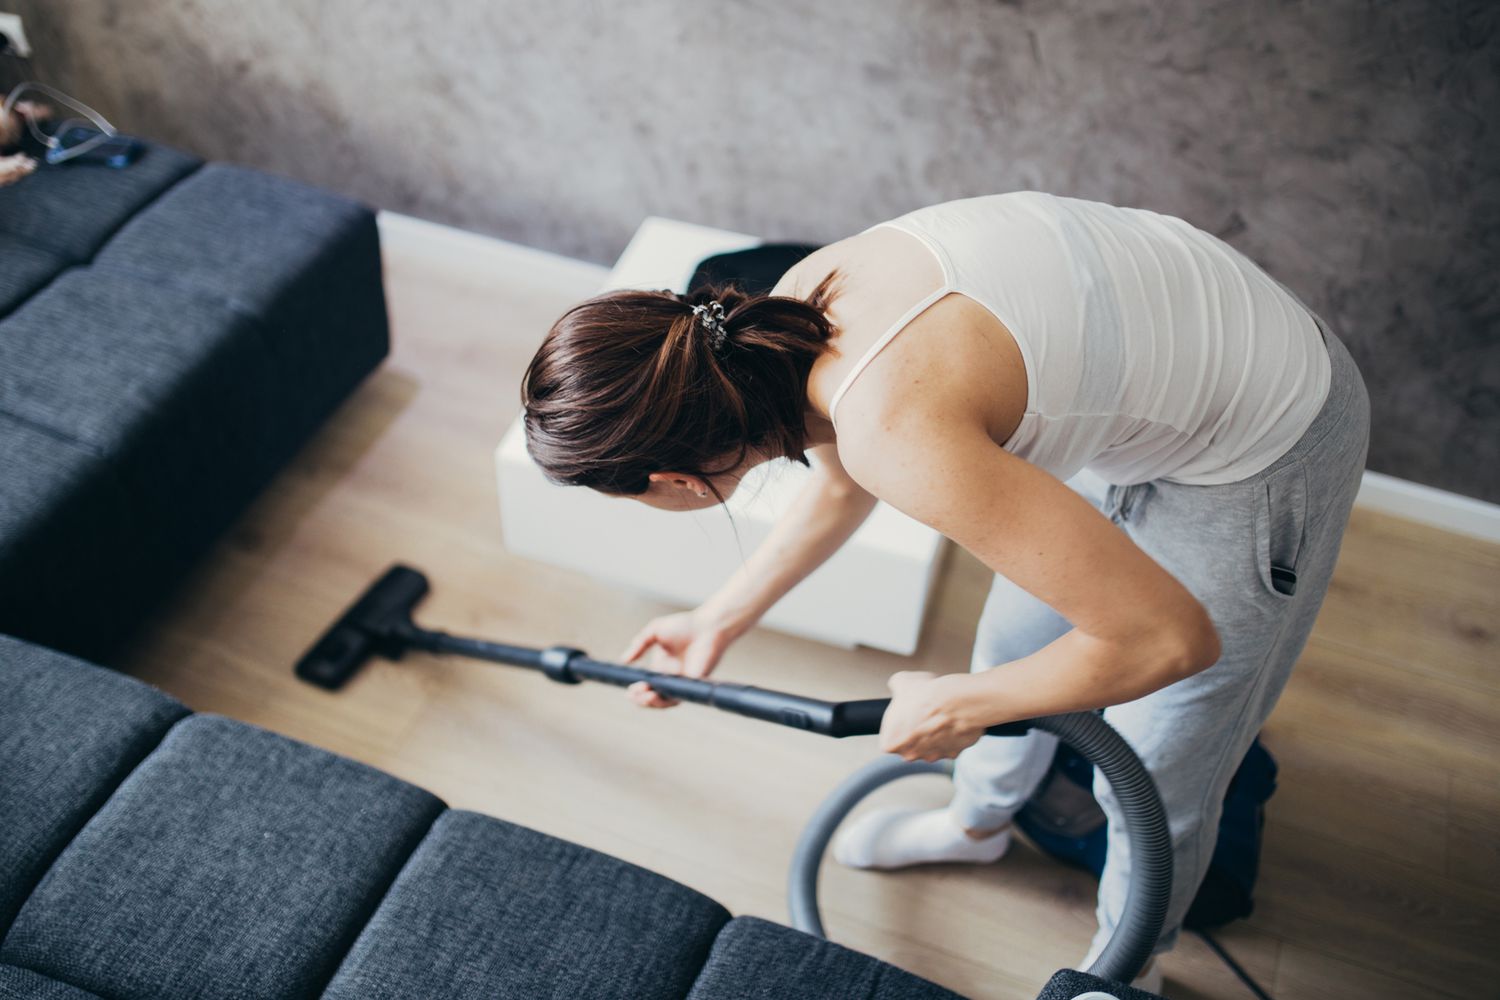 Cleaning Hardwood Floors, Vacuums That Work On Hardwood Floors